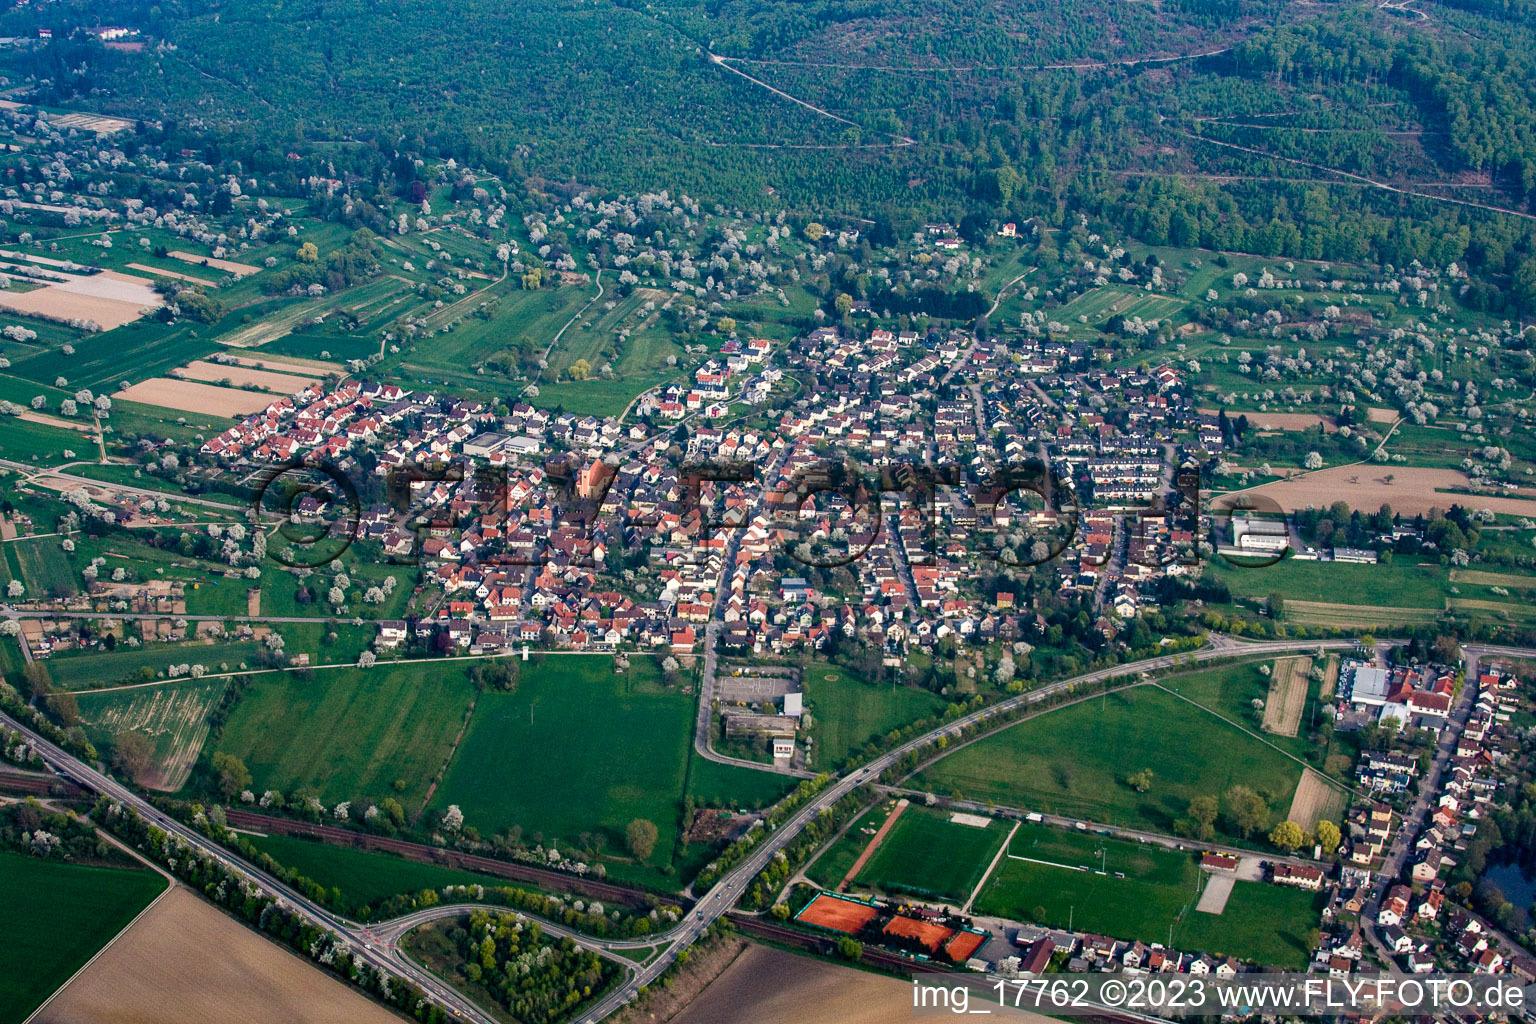 Quartier Oberweier in Ettlingen dans le département Bade-Wurtemberg, Allemagne du point de vue du drone